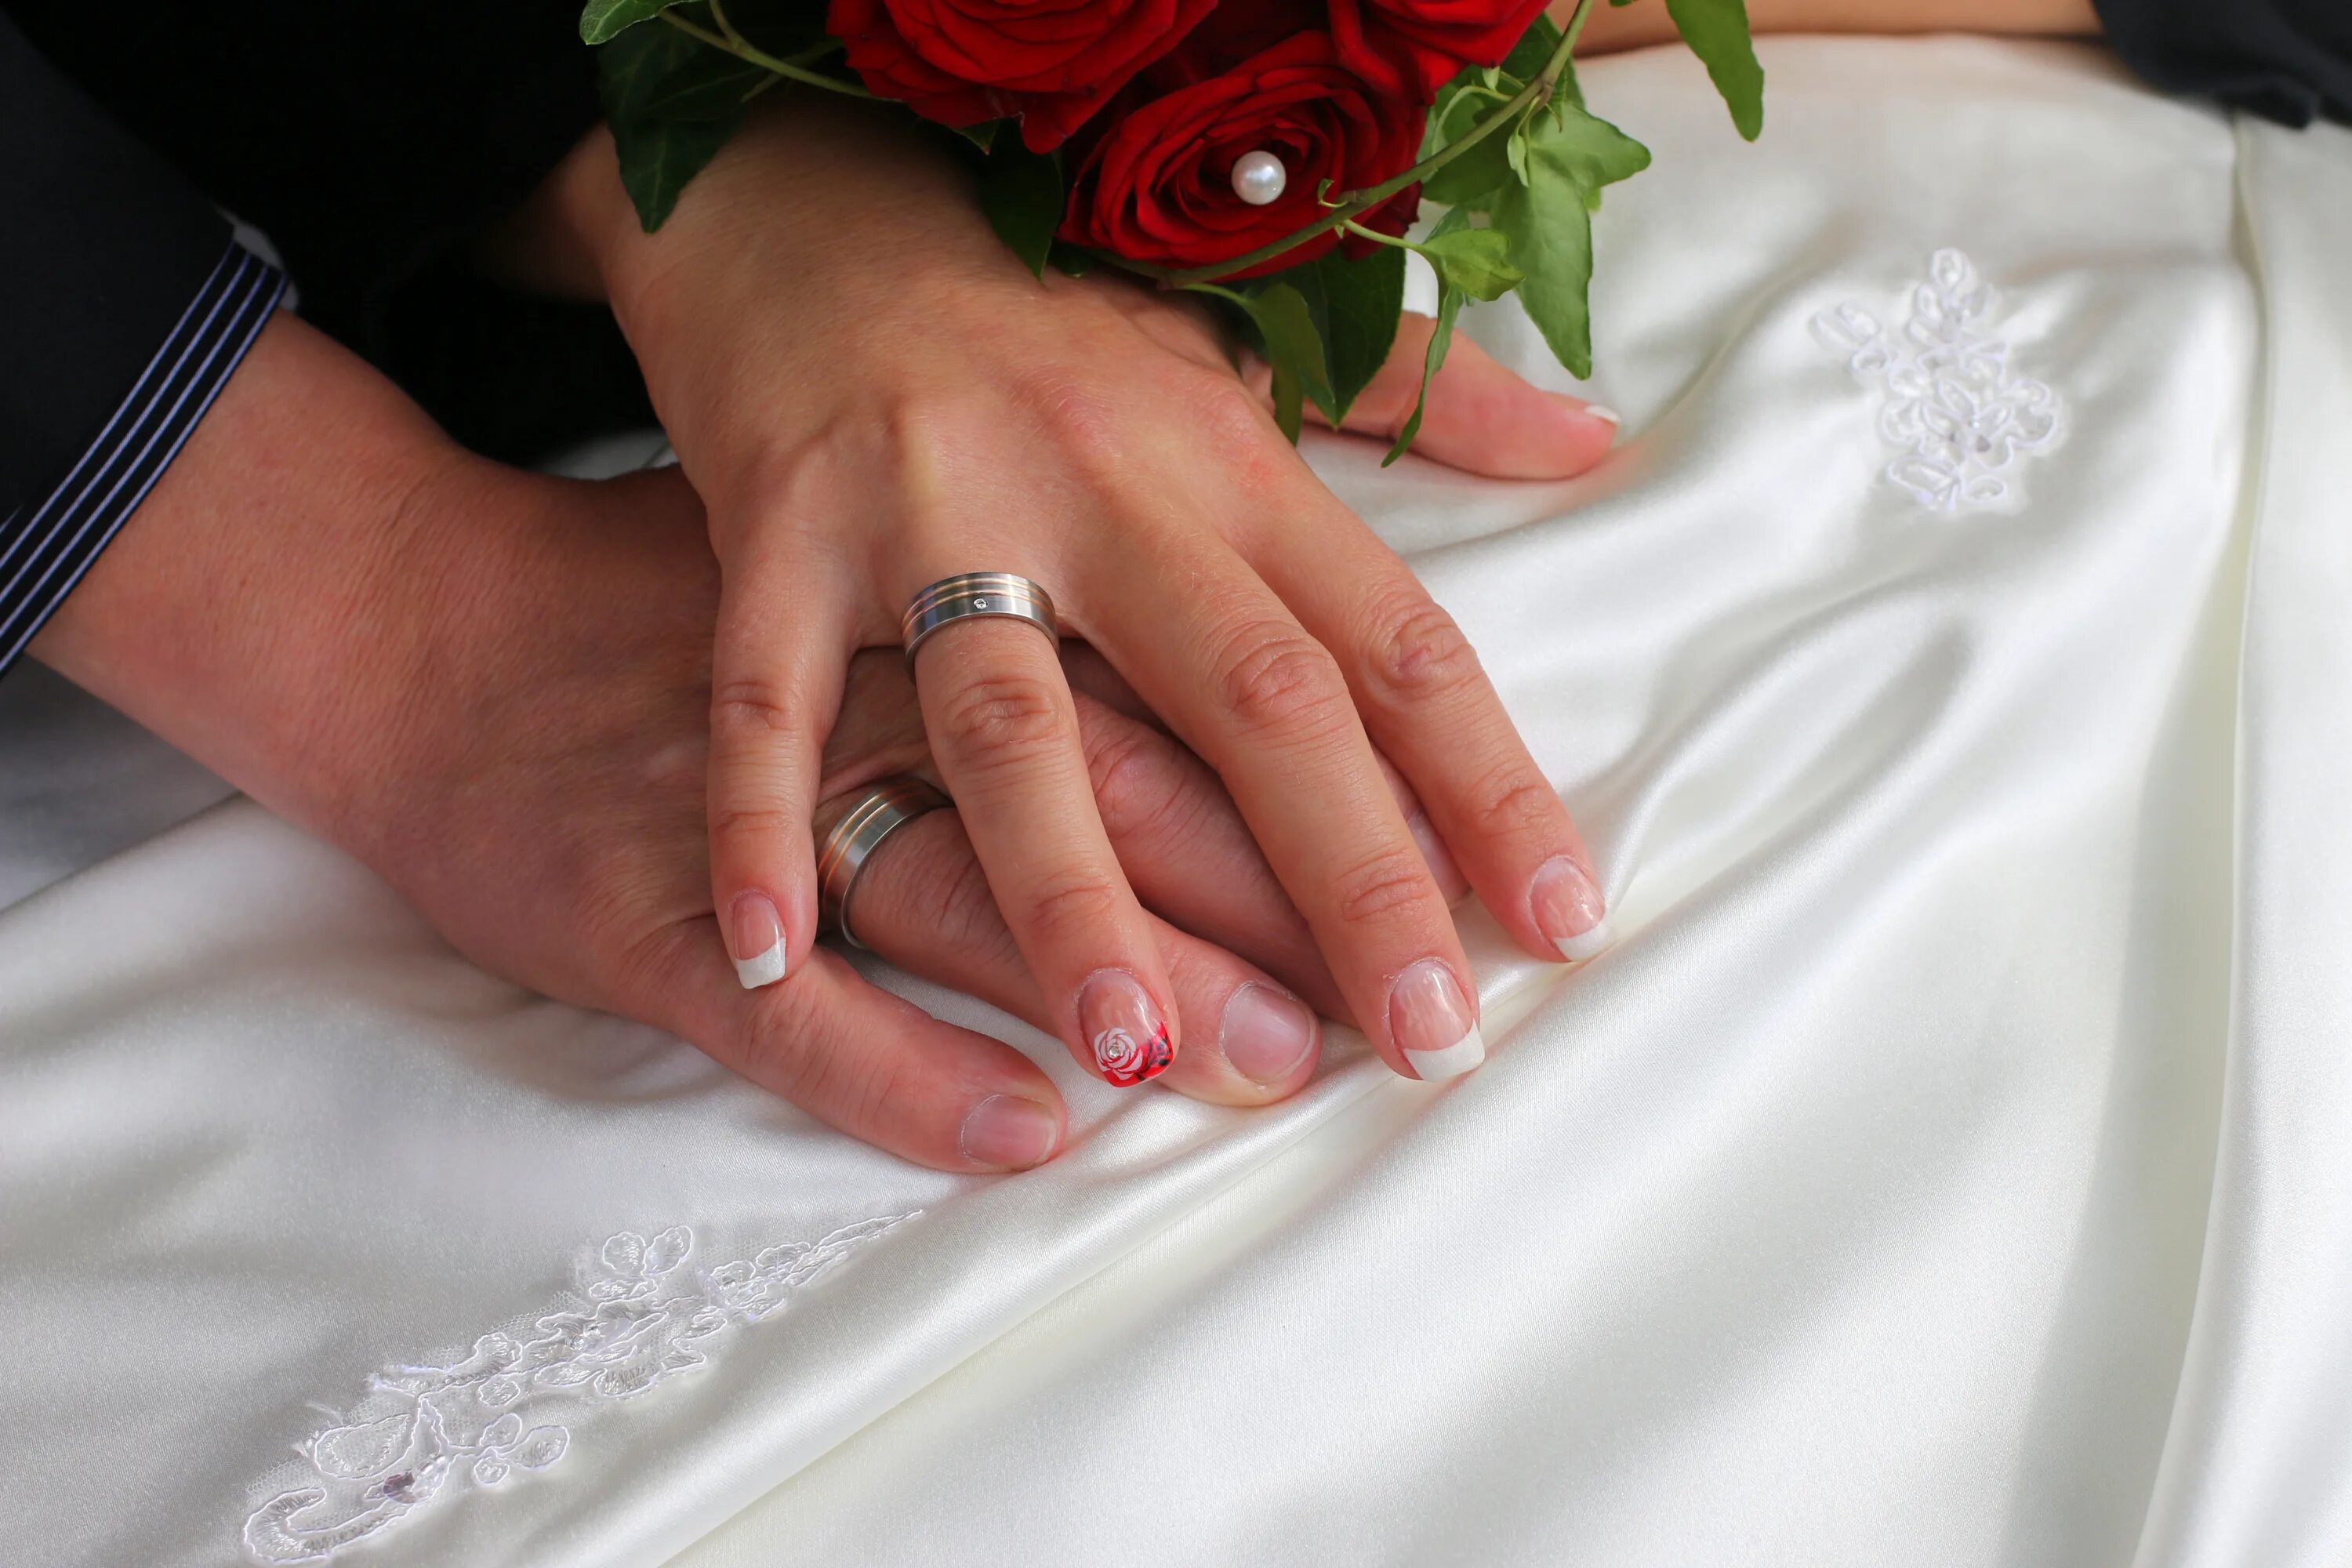 Poor girl ate wedding ring на русском. Свадебные кольца. Кольца молодоженов. Обручальные кольца на руках. Обручальные кольца жених и невеста.